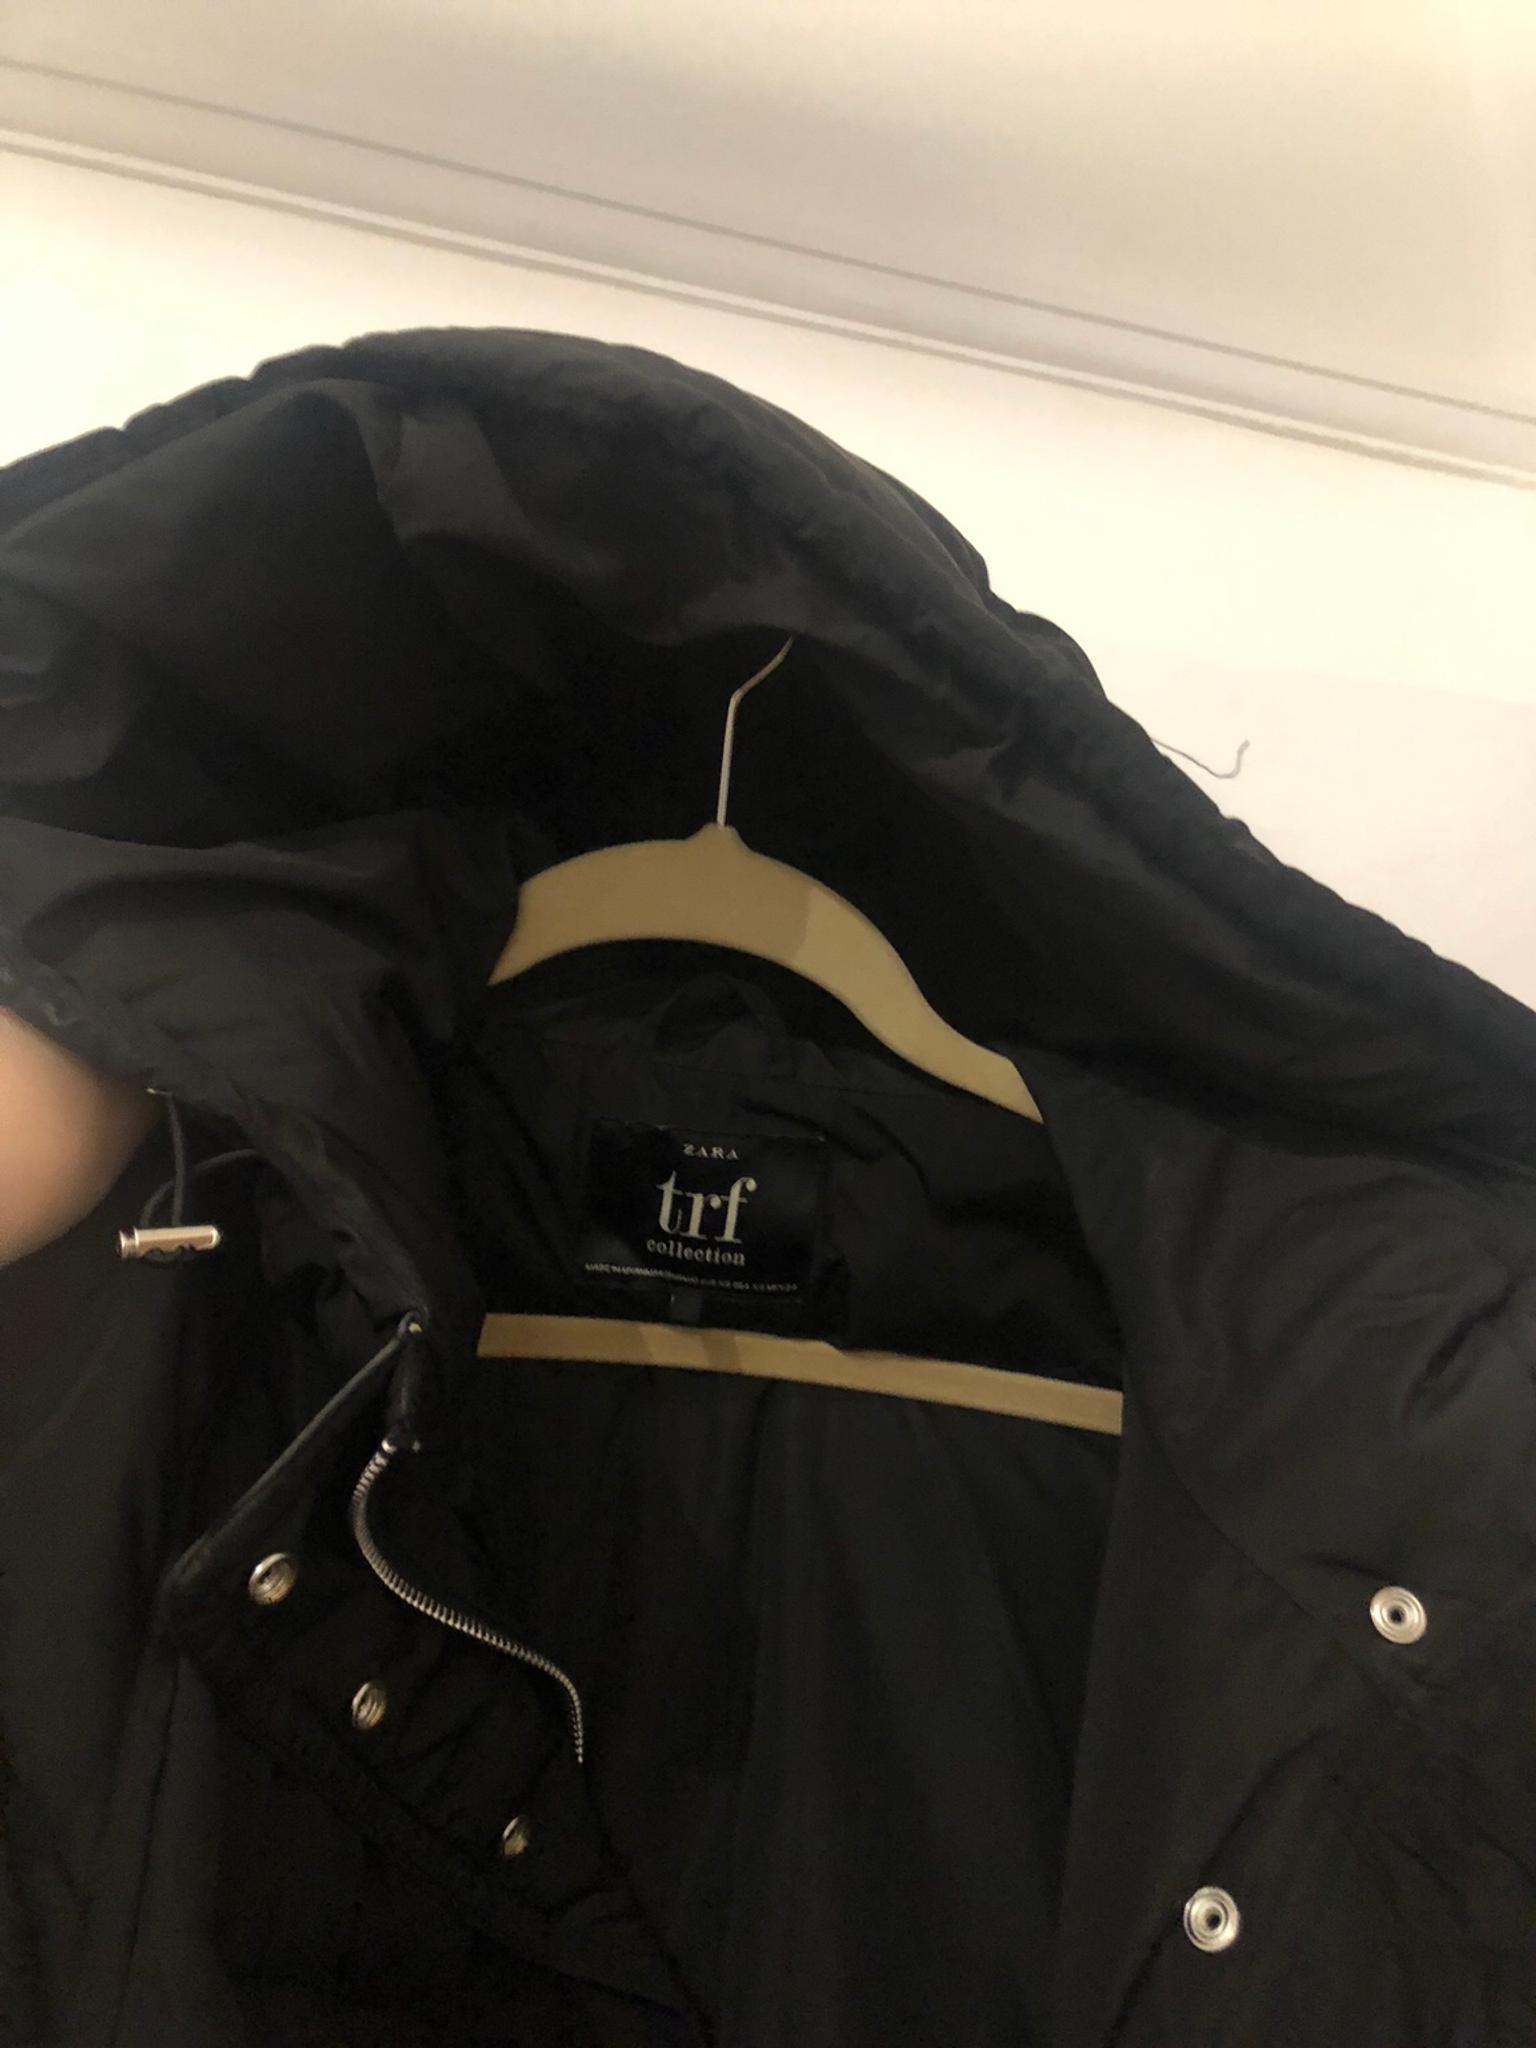 trf collection zara jacket